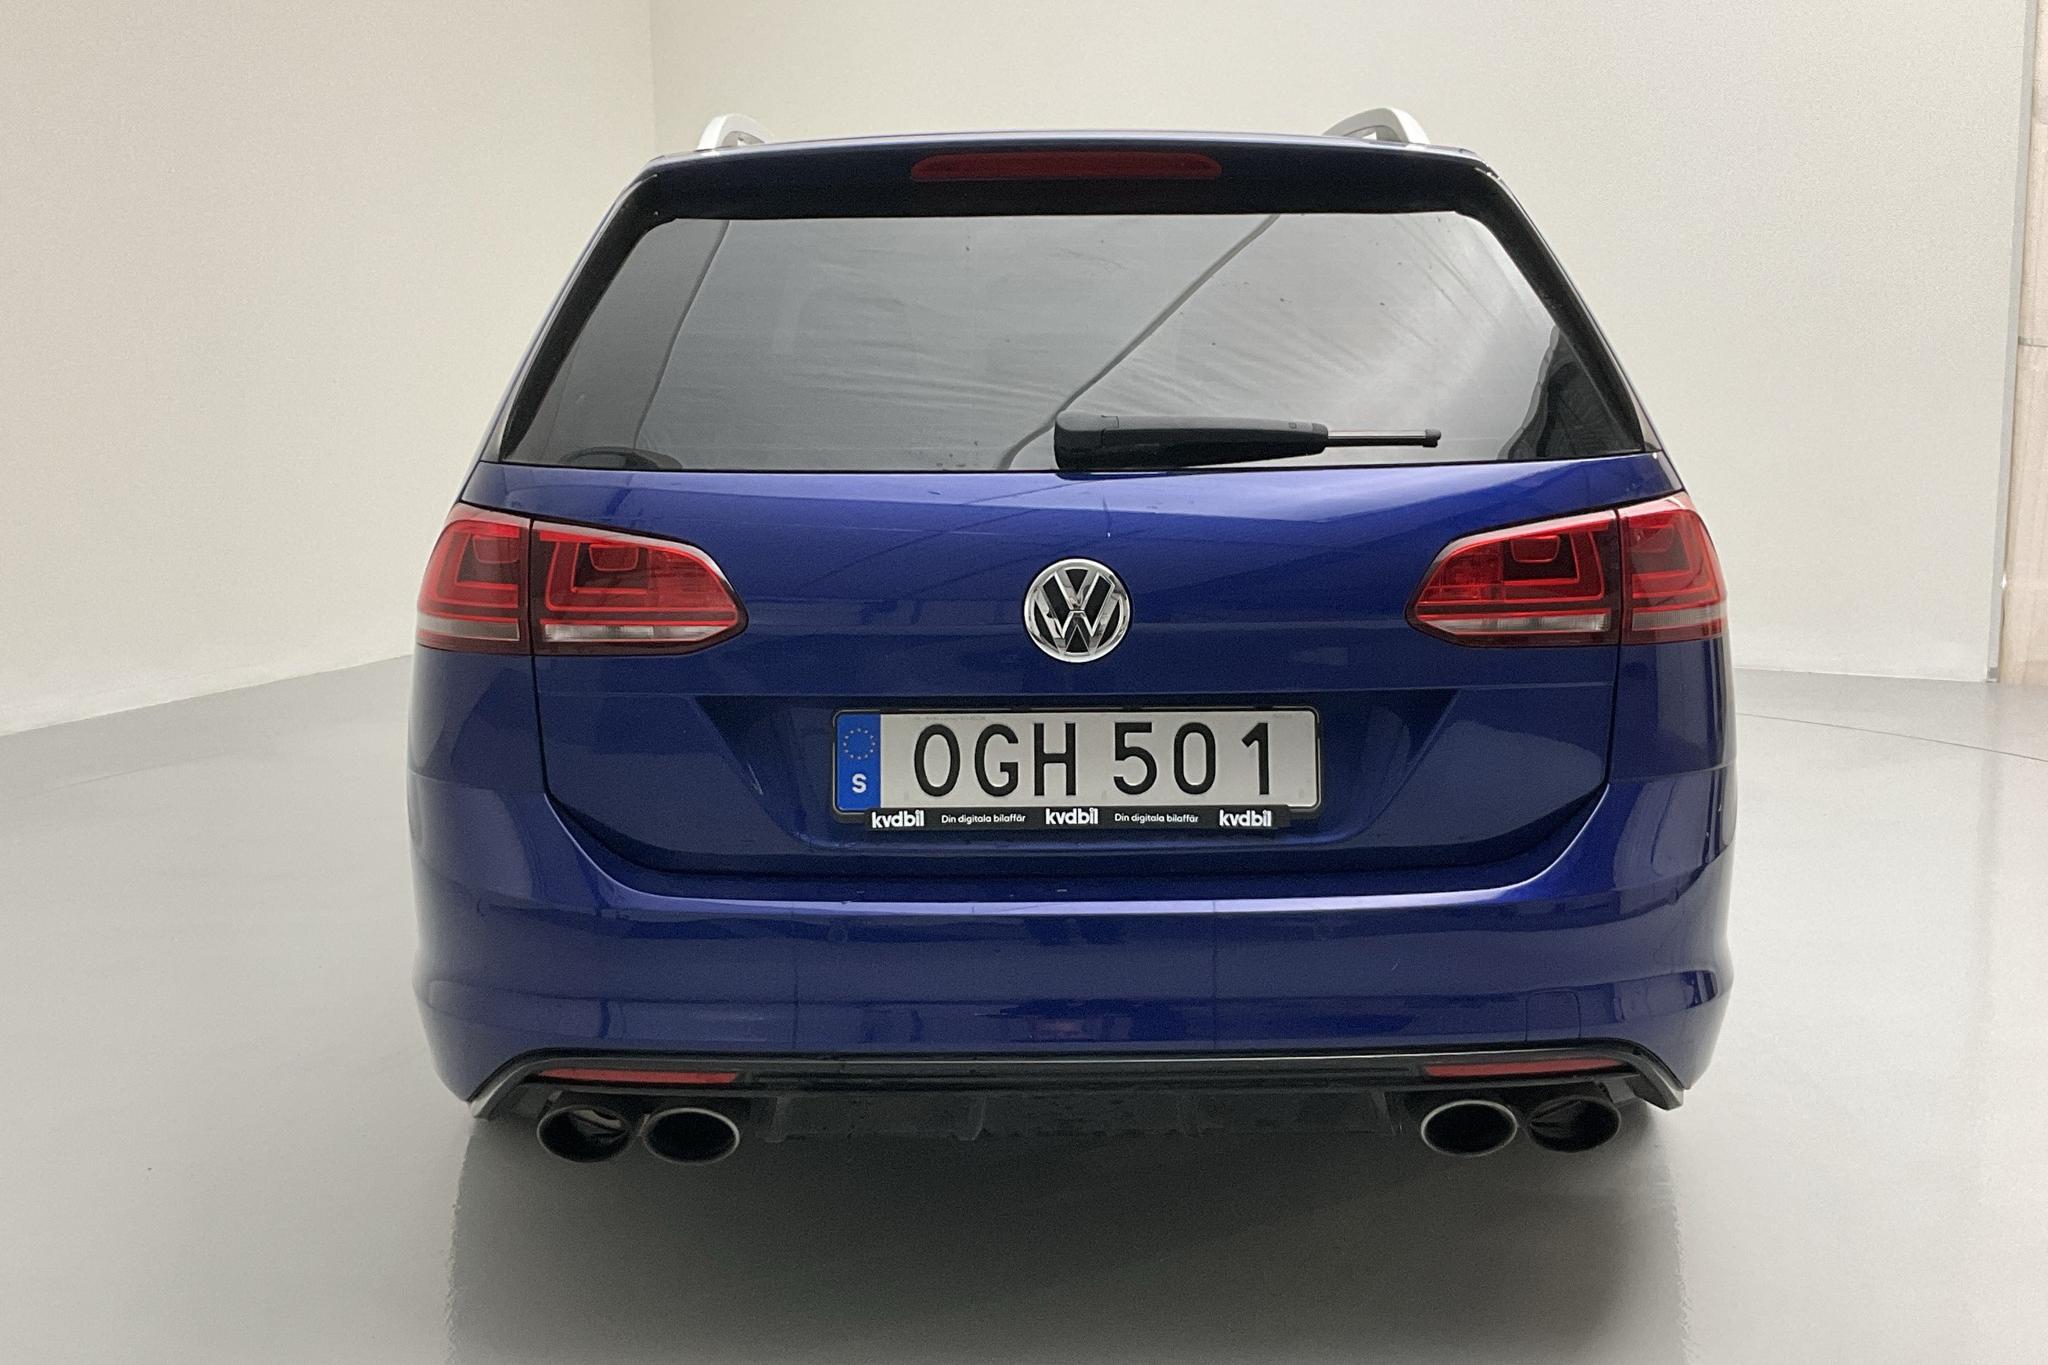 VW Golf VII 2.0 TSI R Sportscombi 4Motion (300hk) - 9 355 mil - Automat - blå - 2017